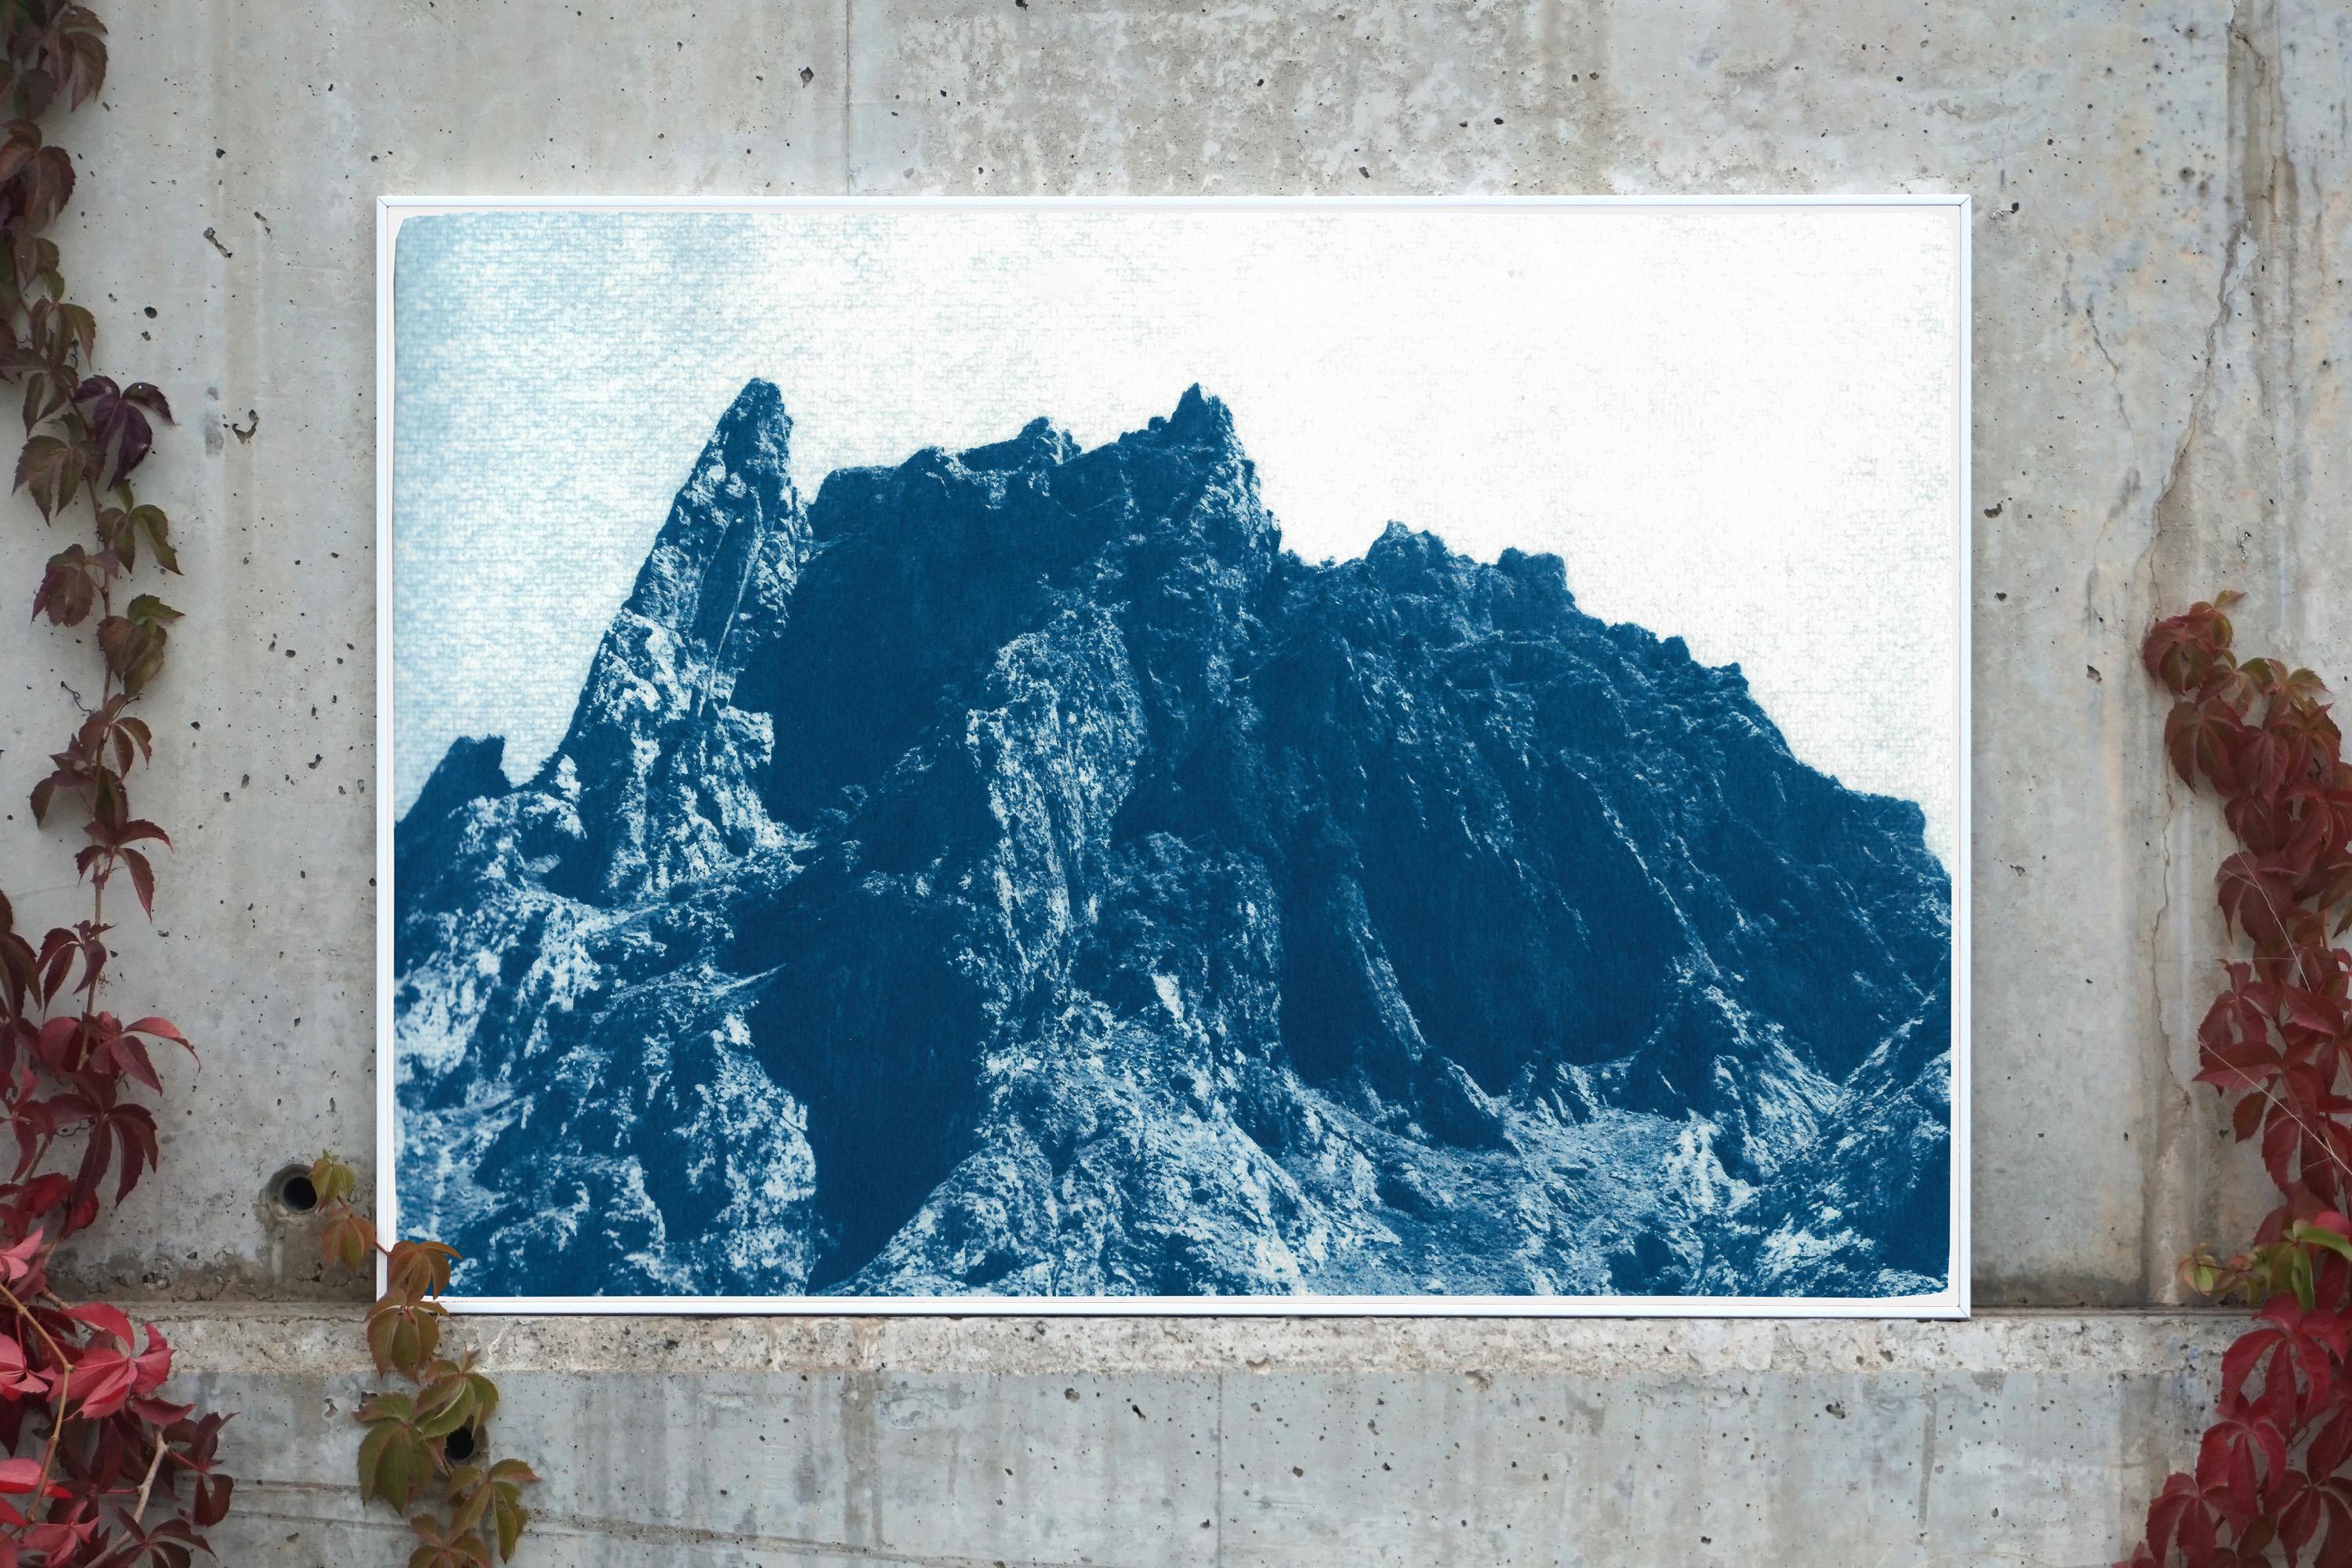 Rocky Desert Mountain in Blue, Detailed Cyanotype on Paper, Dreamlike Landscape - Photorealist Photograph by Kind of Cyan